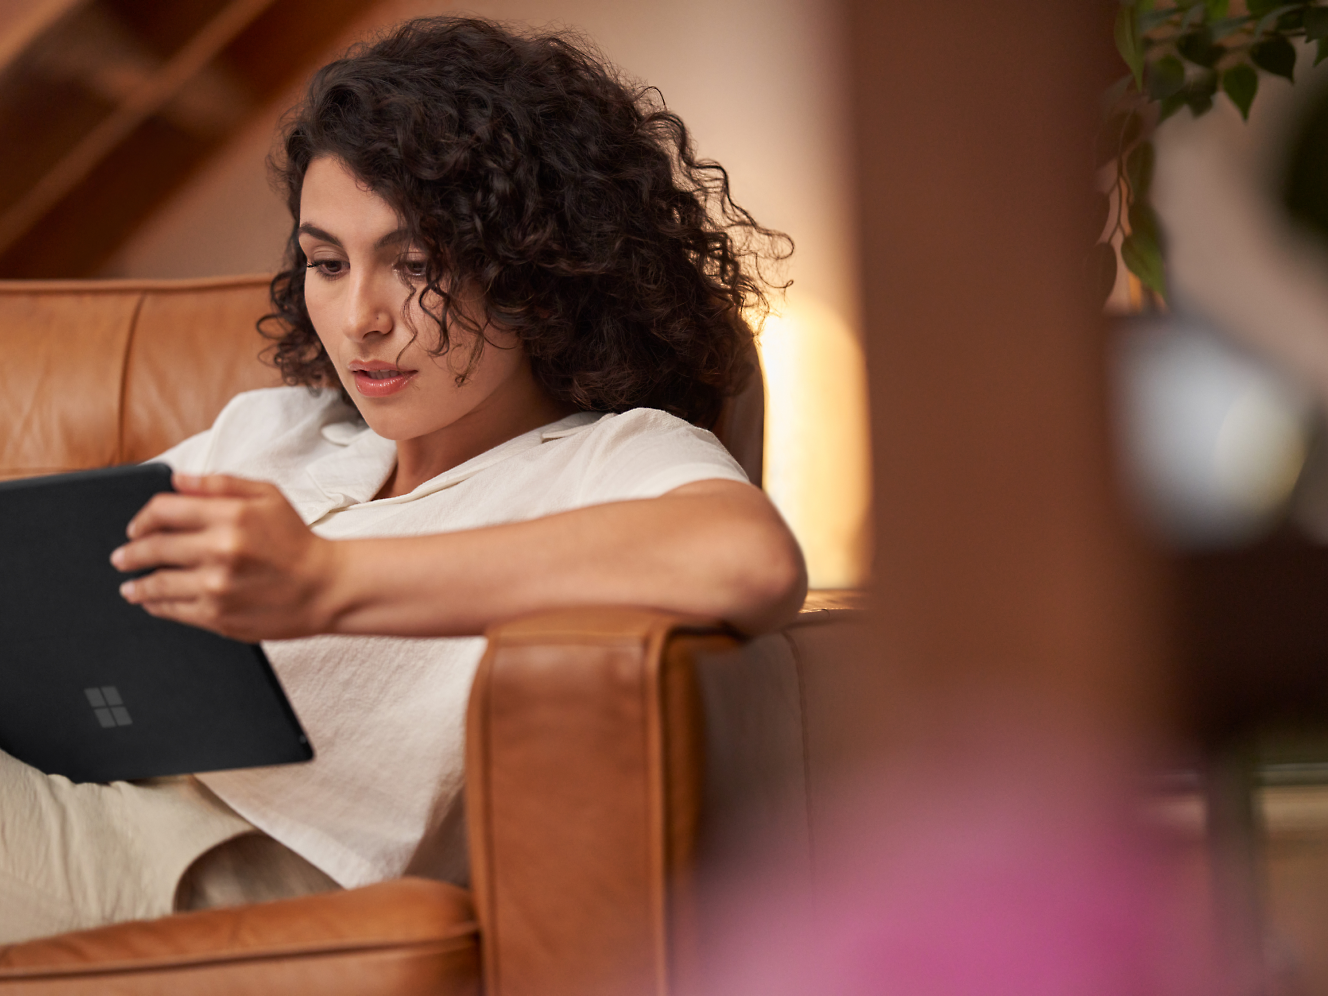 אישה מתולתלת קוראת בקשב רב בטאבלט, ישובה על כורסת עור חום בבית.